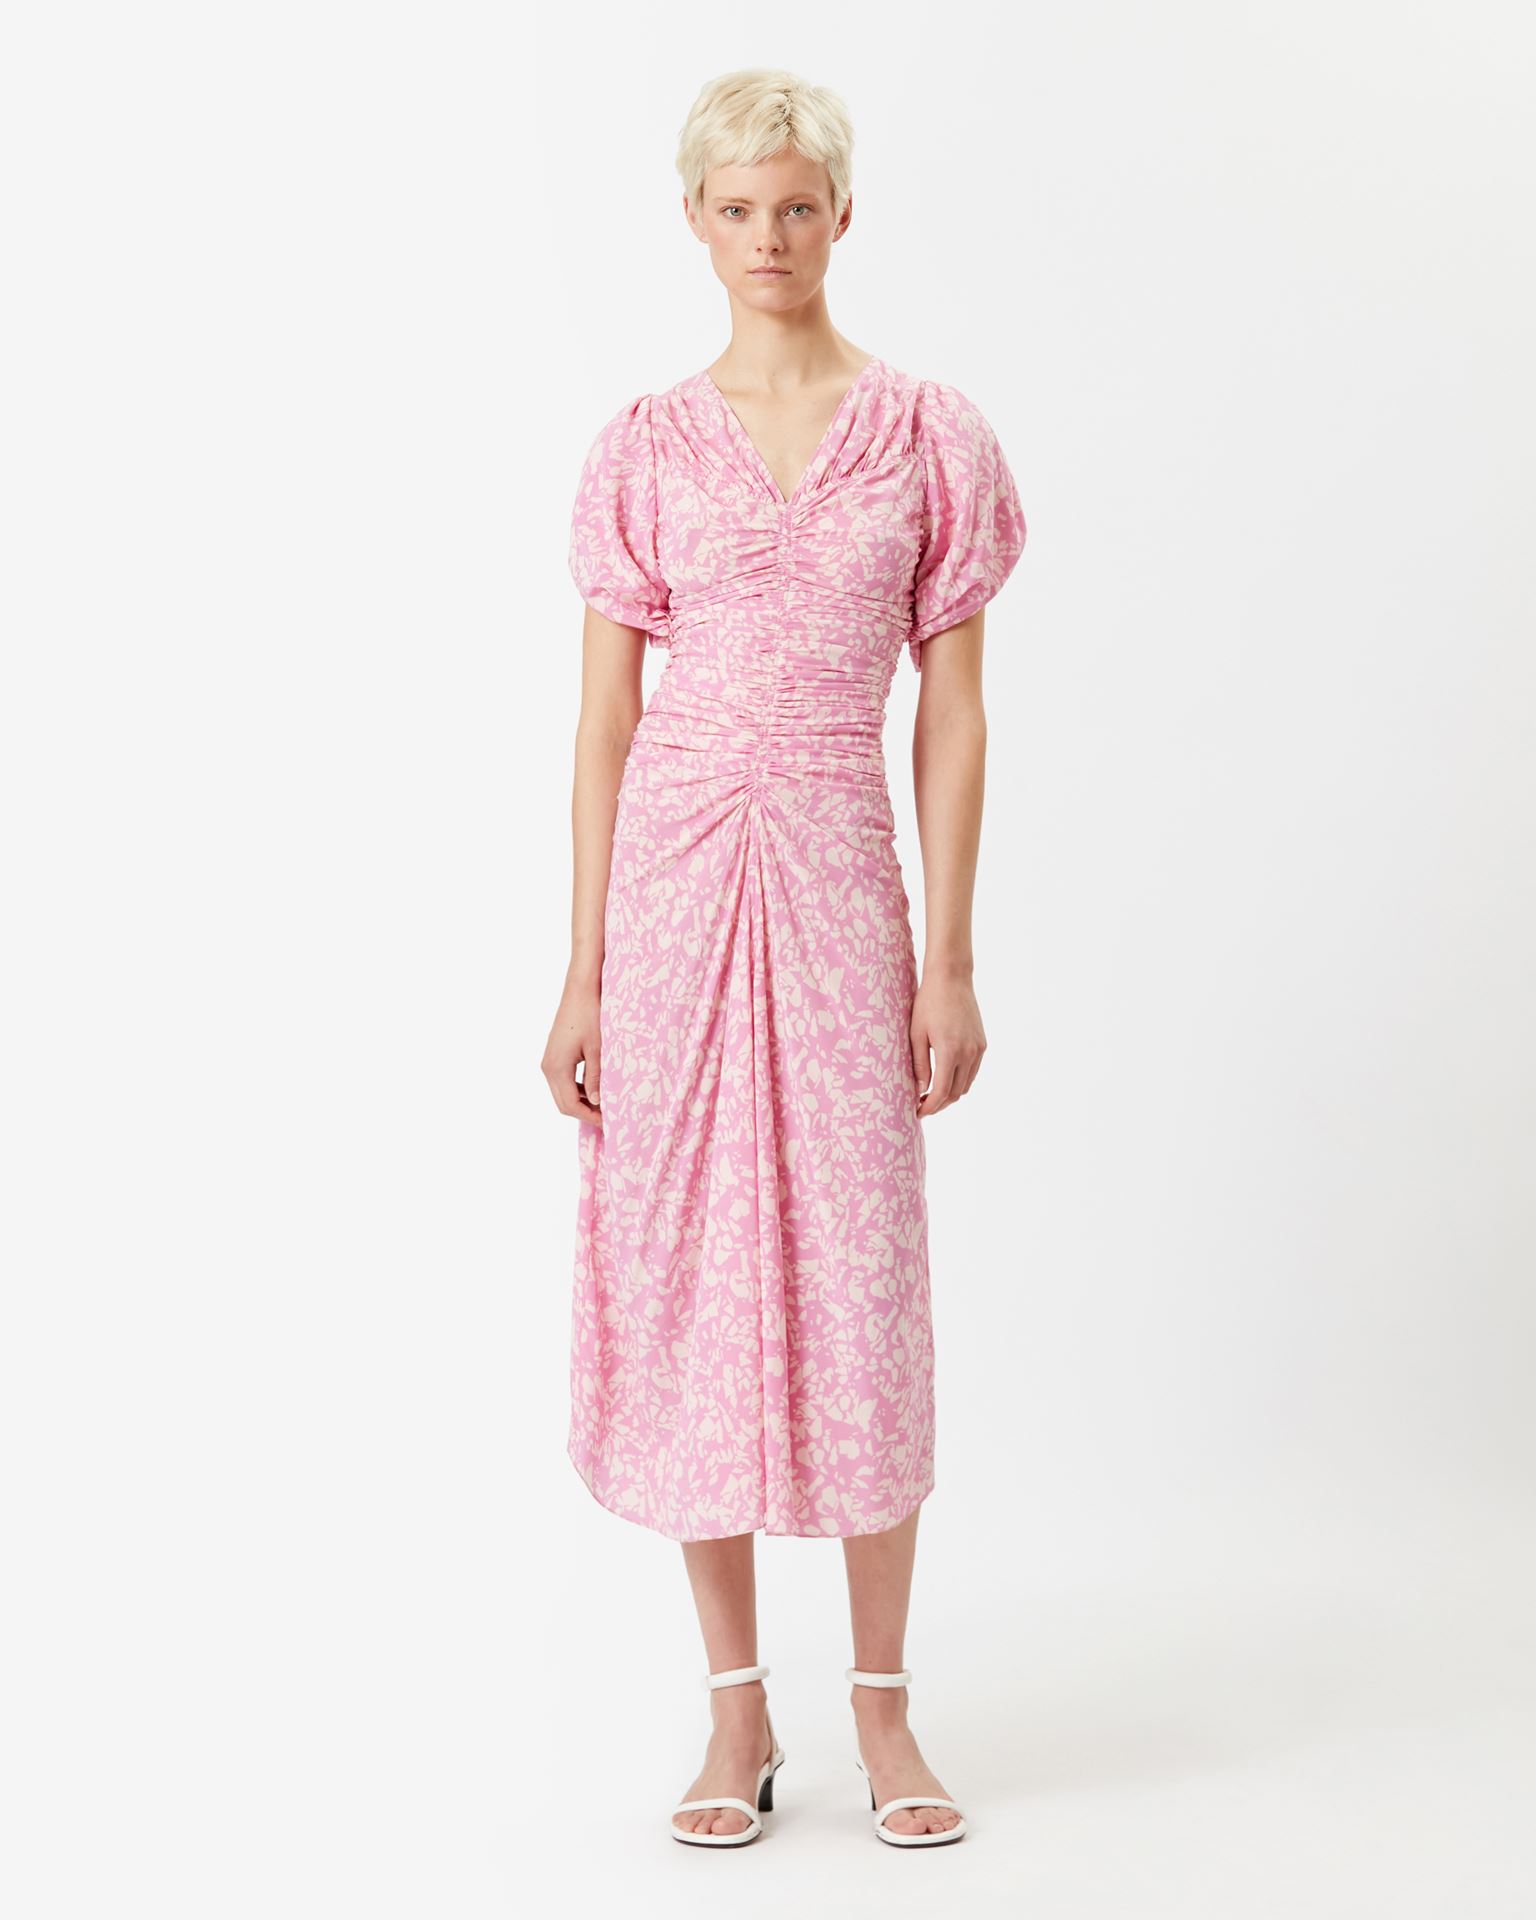 Isabel Marant, Lilia Silk Dress - Women - Pink